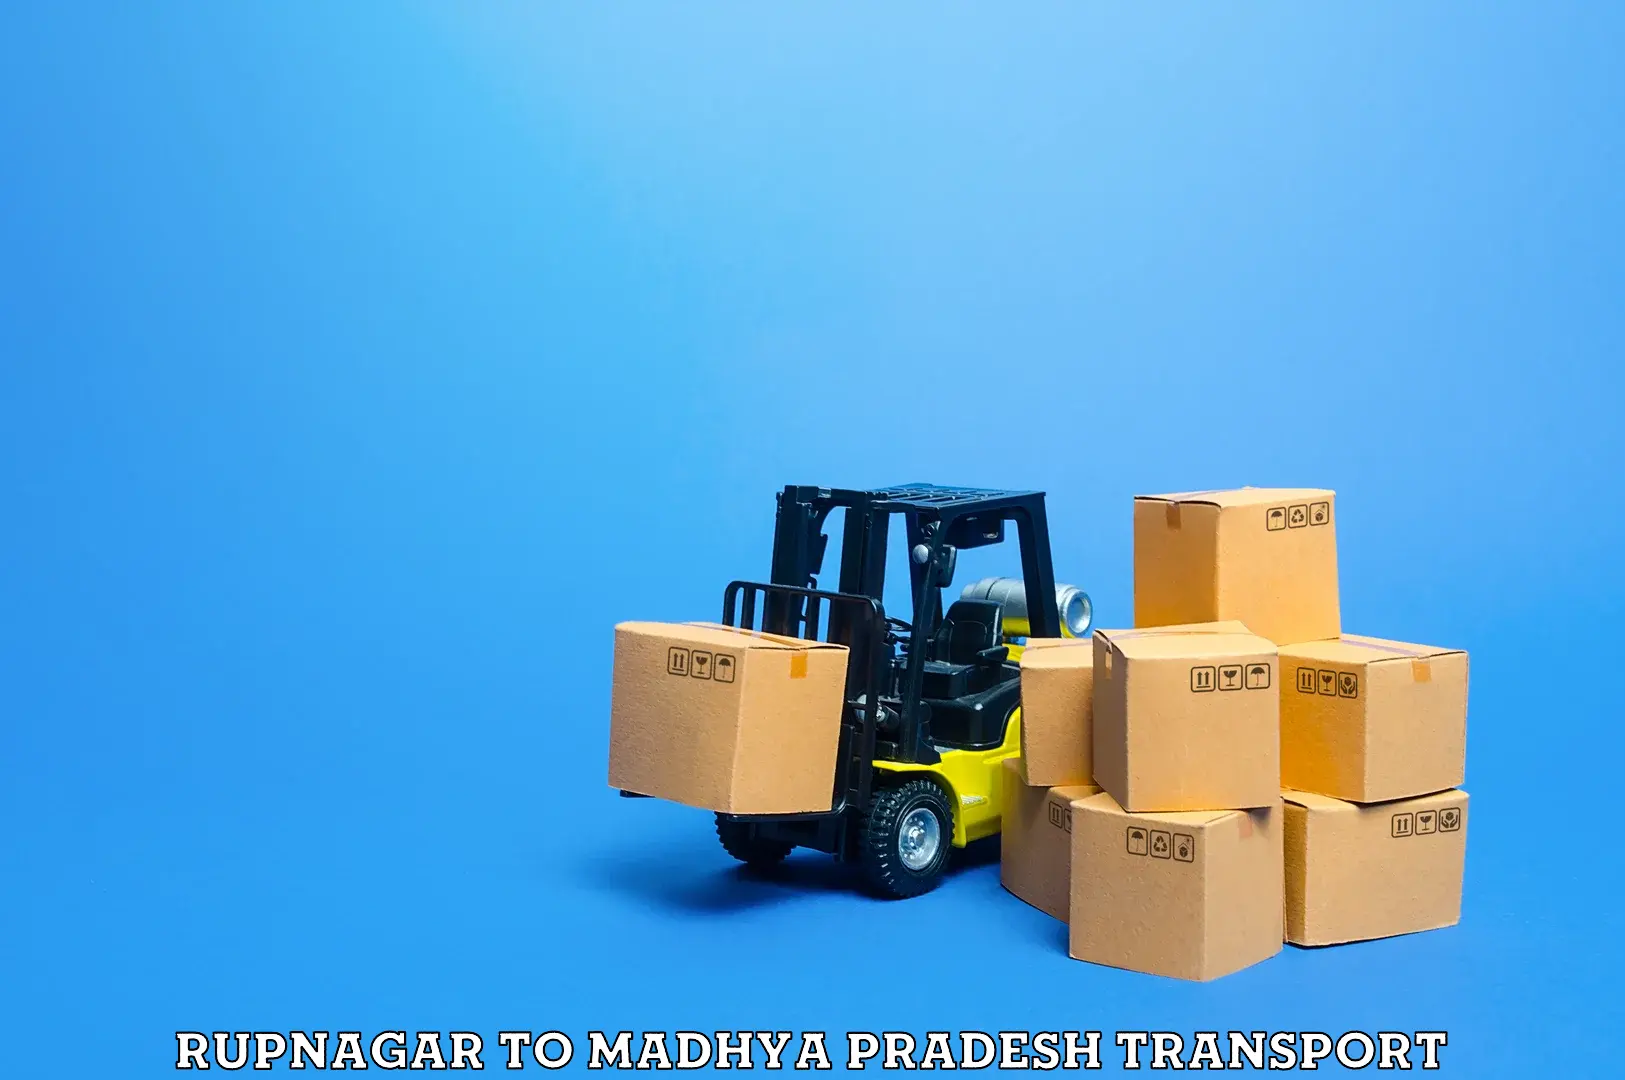 Furniture transport service Rupnagar to Chanderi